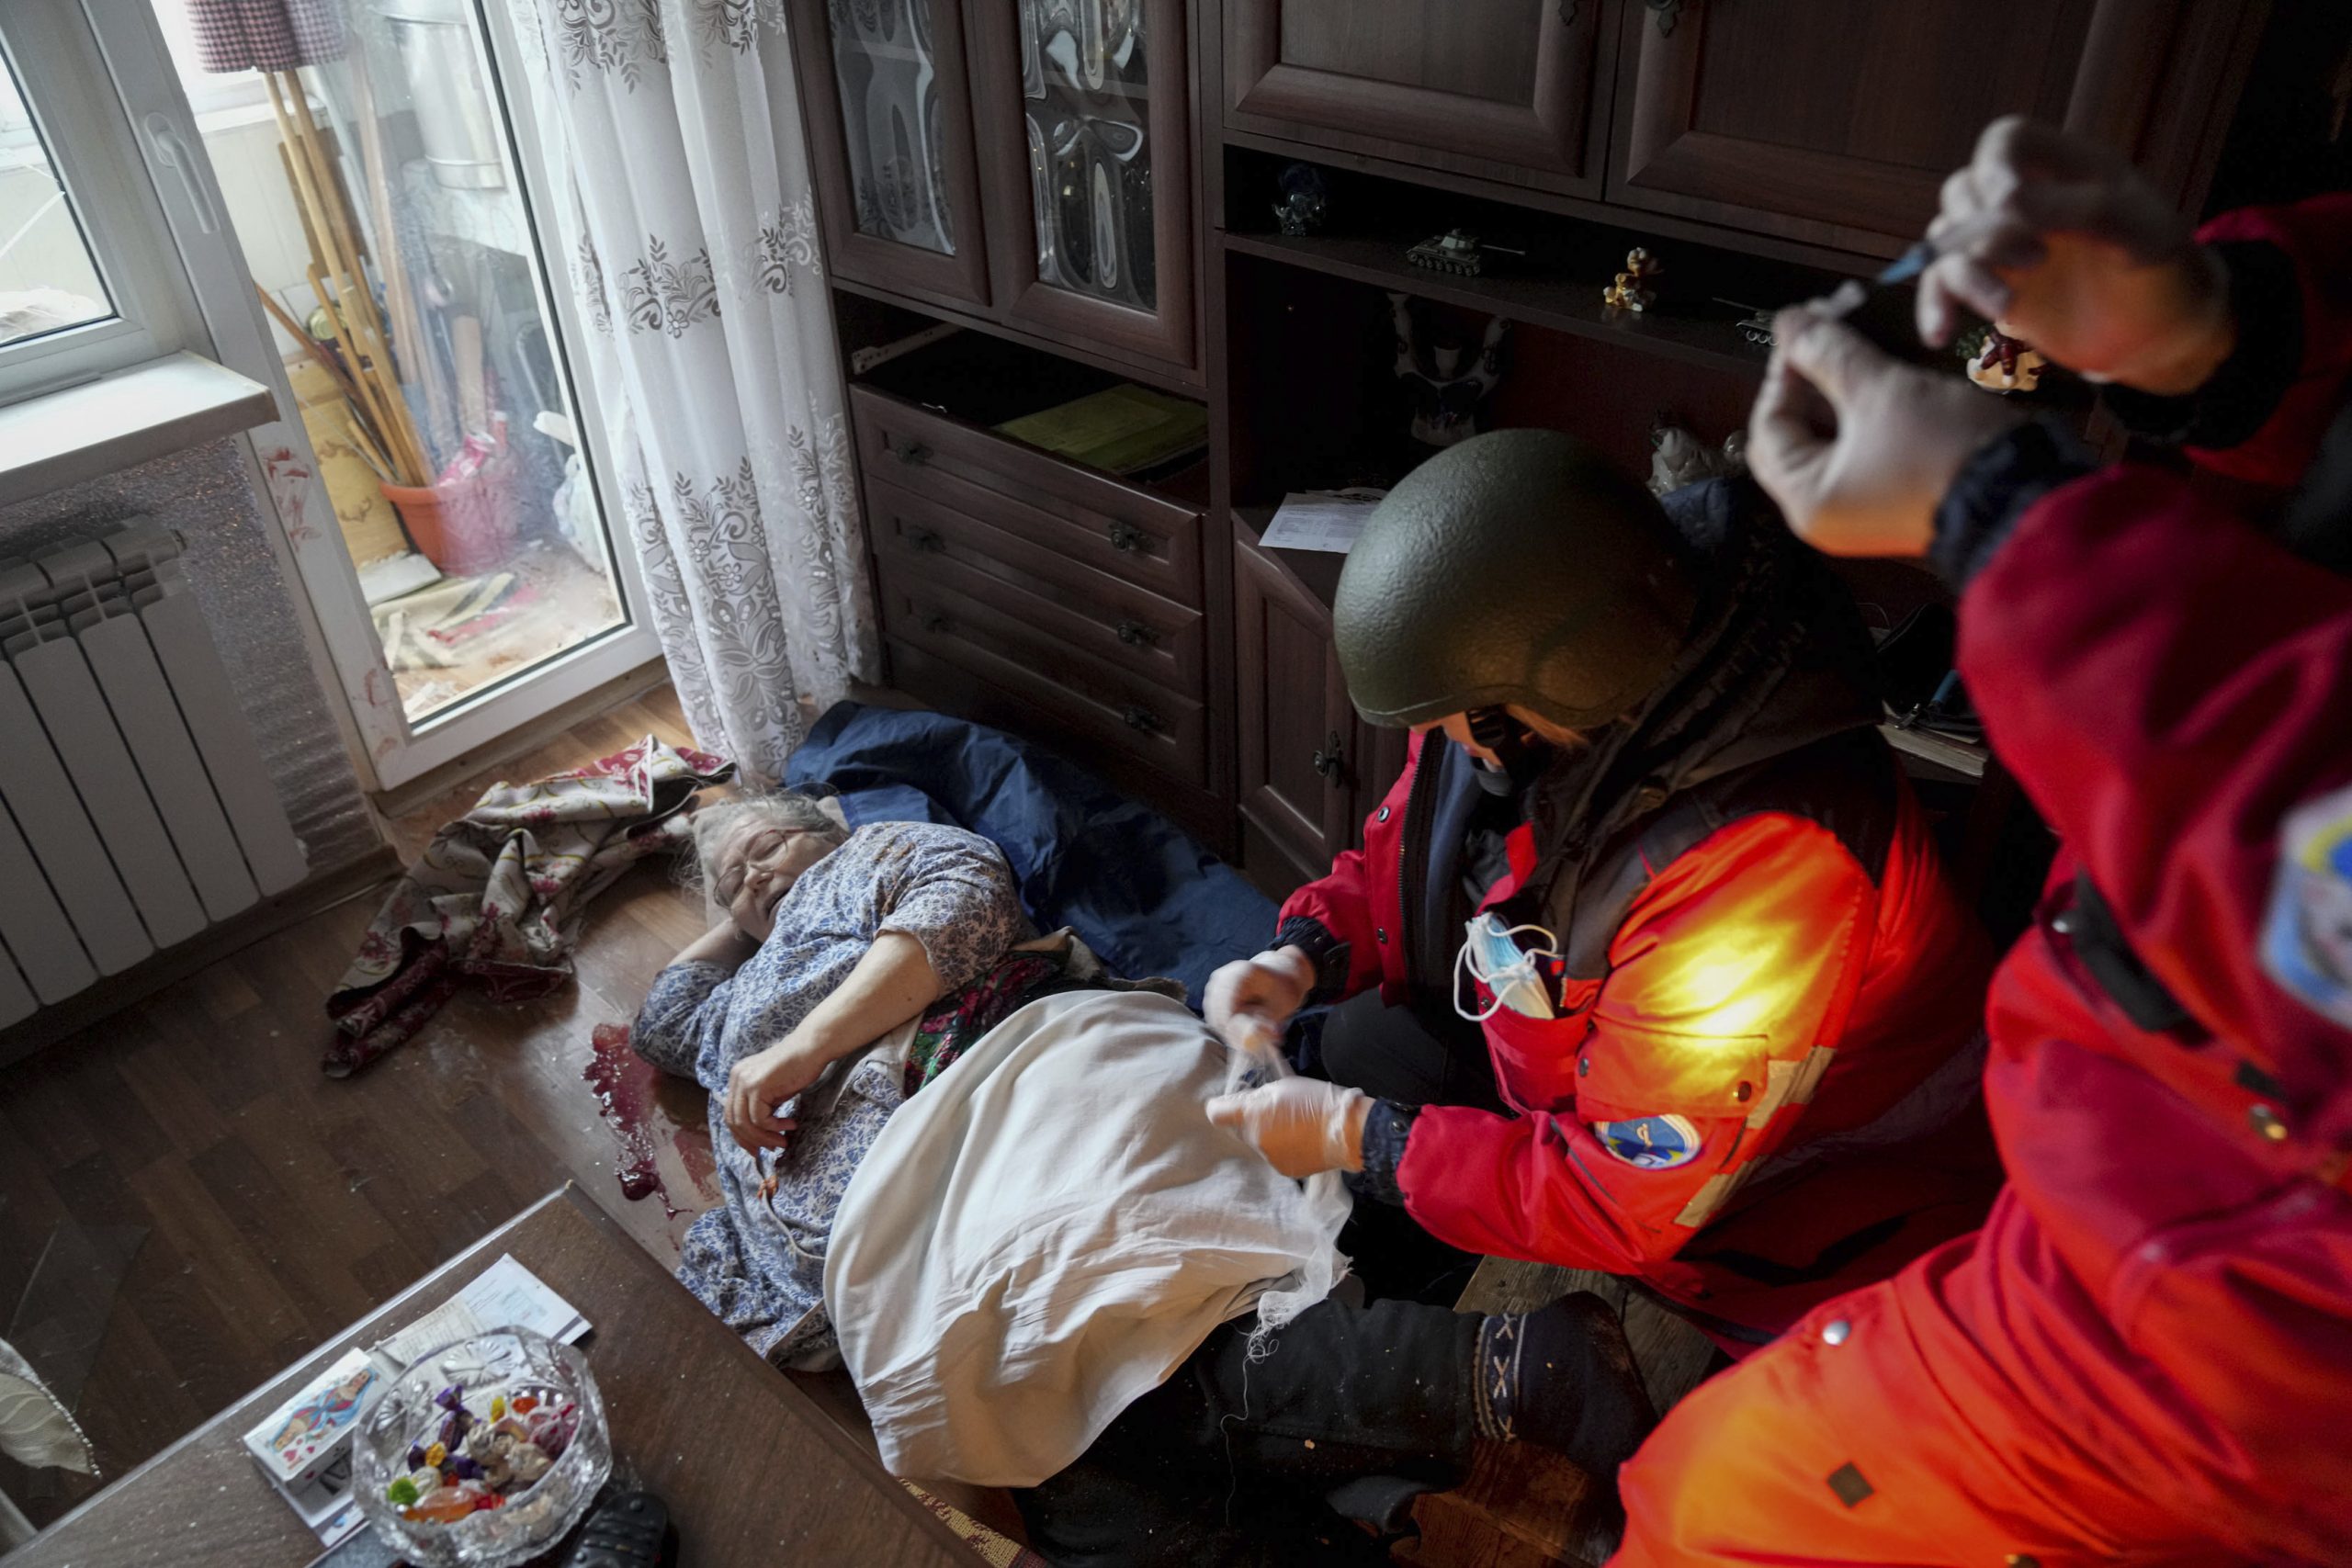 马里乌波尔市围城24小时惨况曝光 少年被炸死父抱遗体痛哭